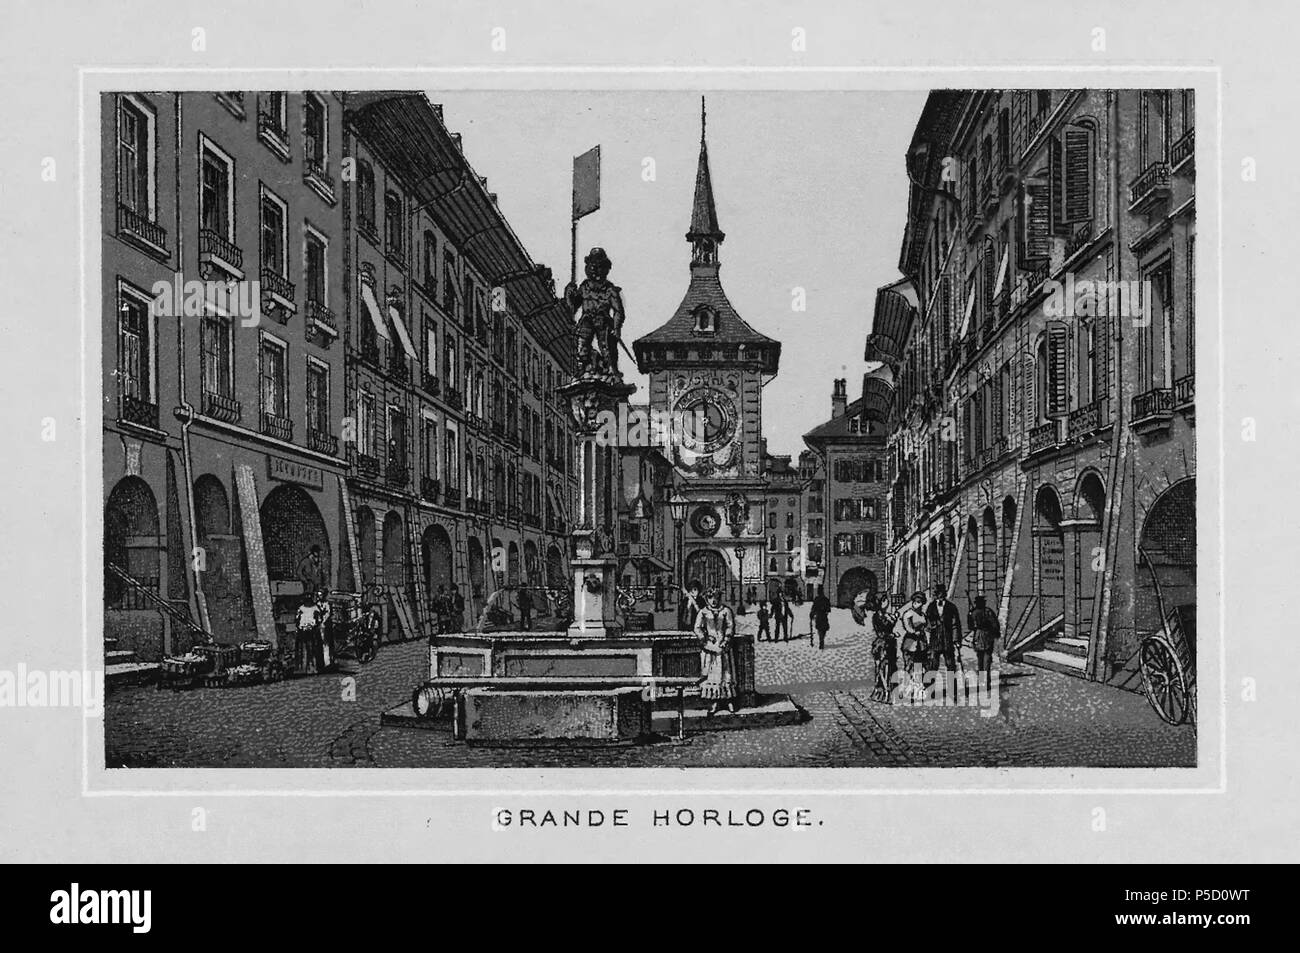 N/A. Français : Livre: 'Souvenir de Berne', grande horloge . circa 1890. Unknown 320 CH-NB-Souvenir de Berne-nbdig-18138-page012 Stock Photo